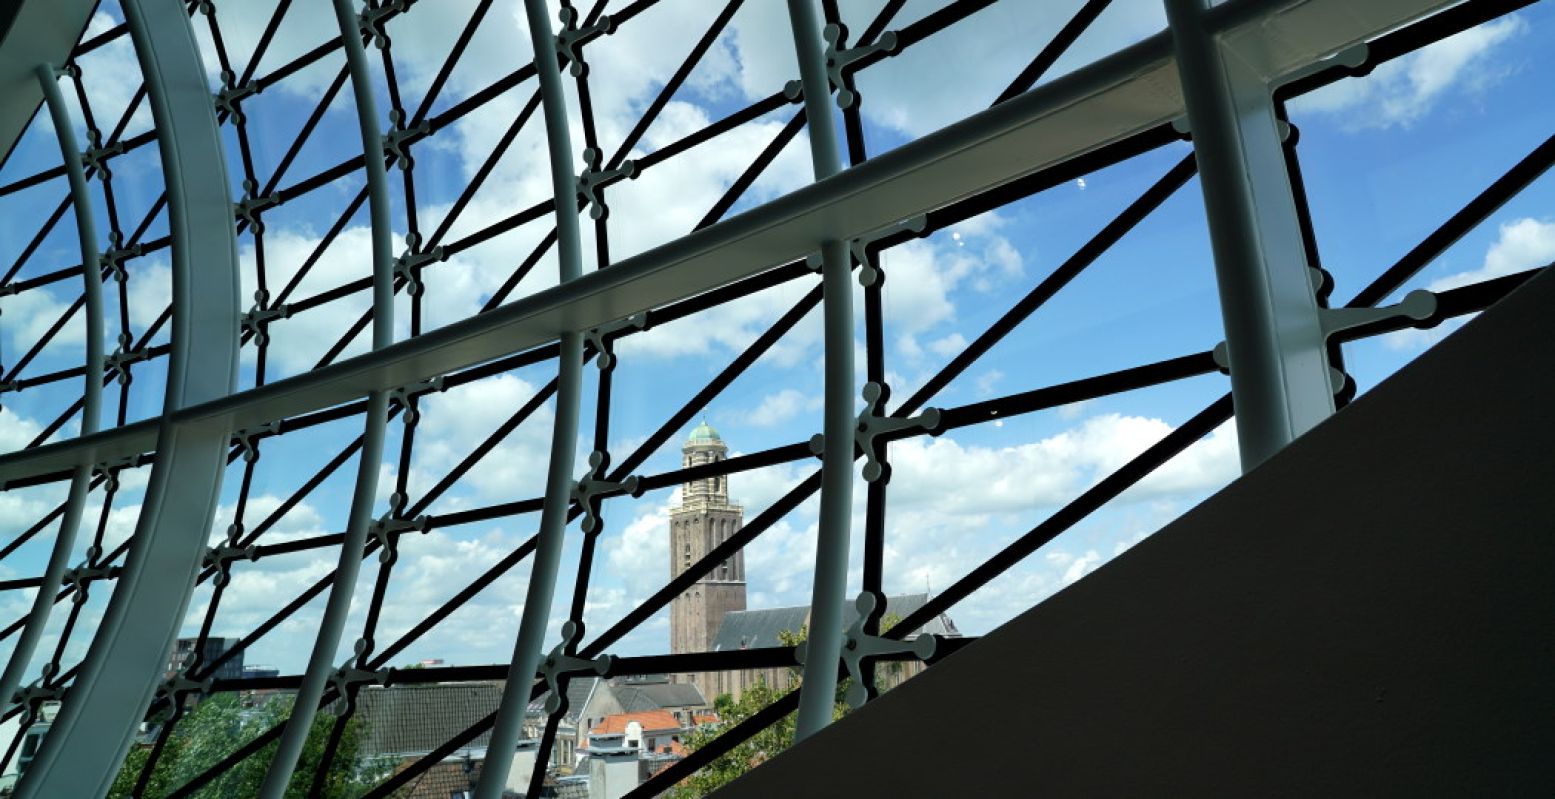 De Peperbus is niet te missen, al helemaal niet vanaf de bovenste verdieping van Museum de Fundatie. Foto: André Löwenthal